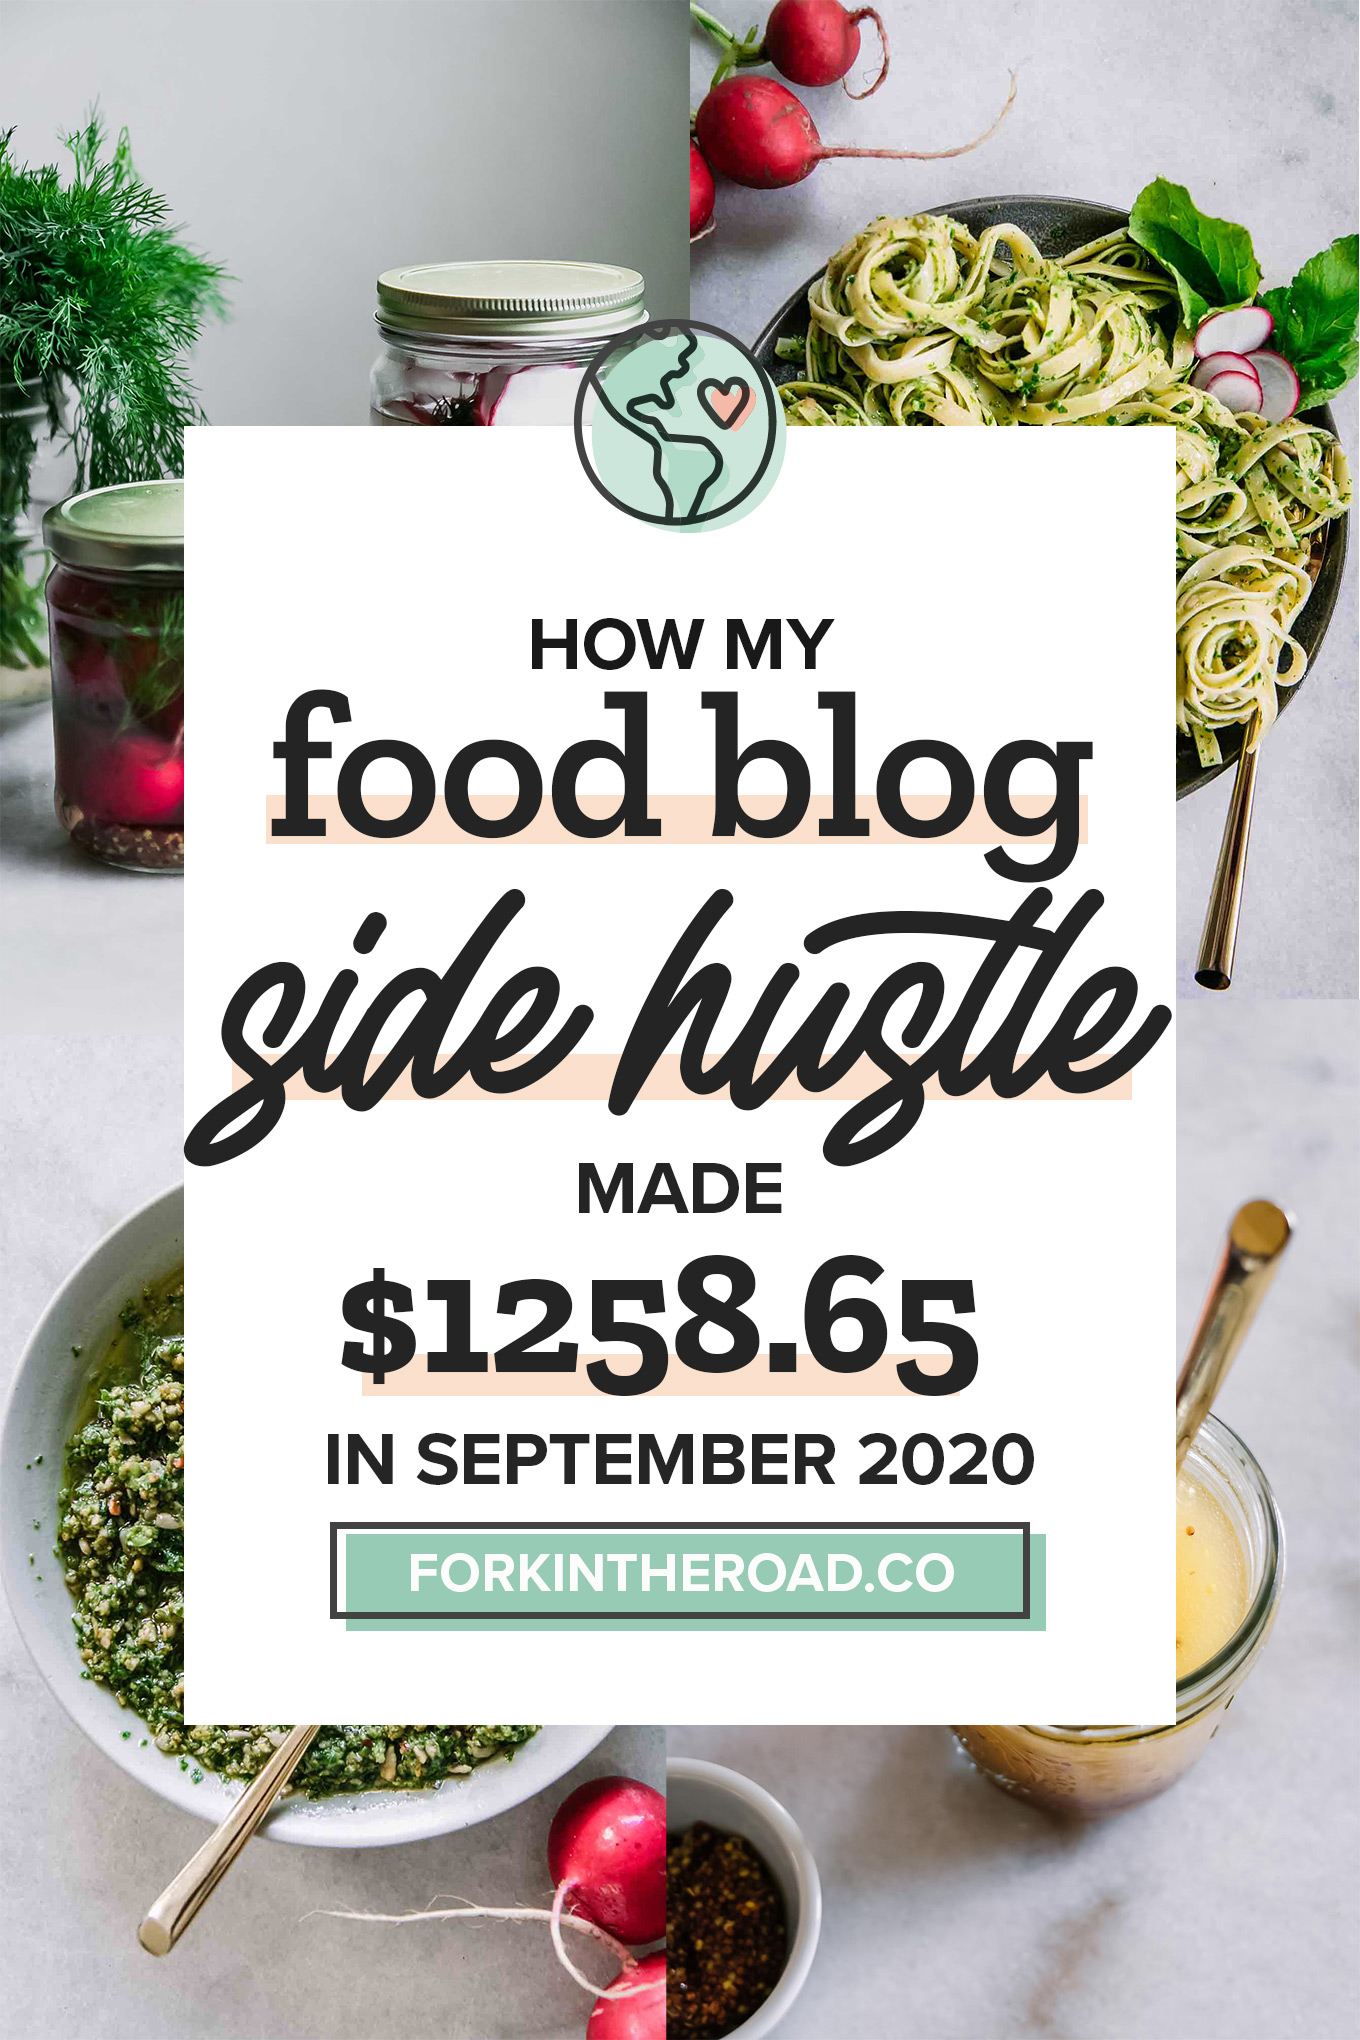 September 2020 Food Blog Side Hustle Income Report: $1258.65